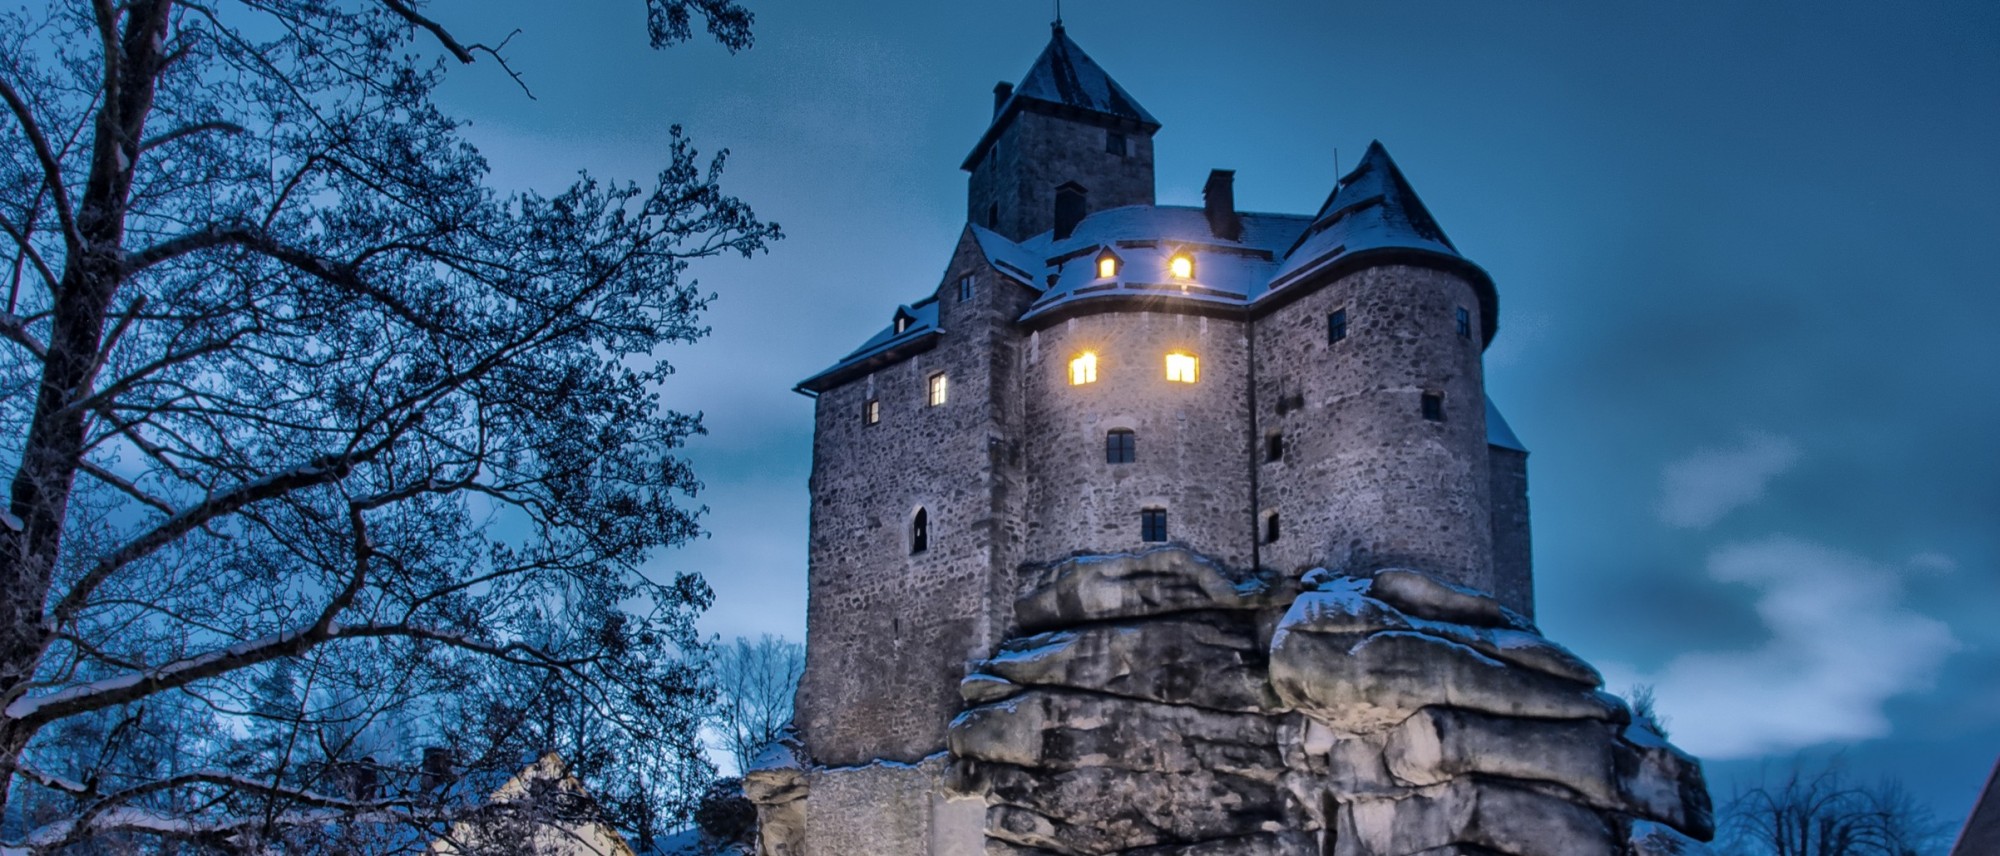 Außenansicht der Burg Falkenberg bei Nacht